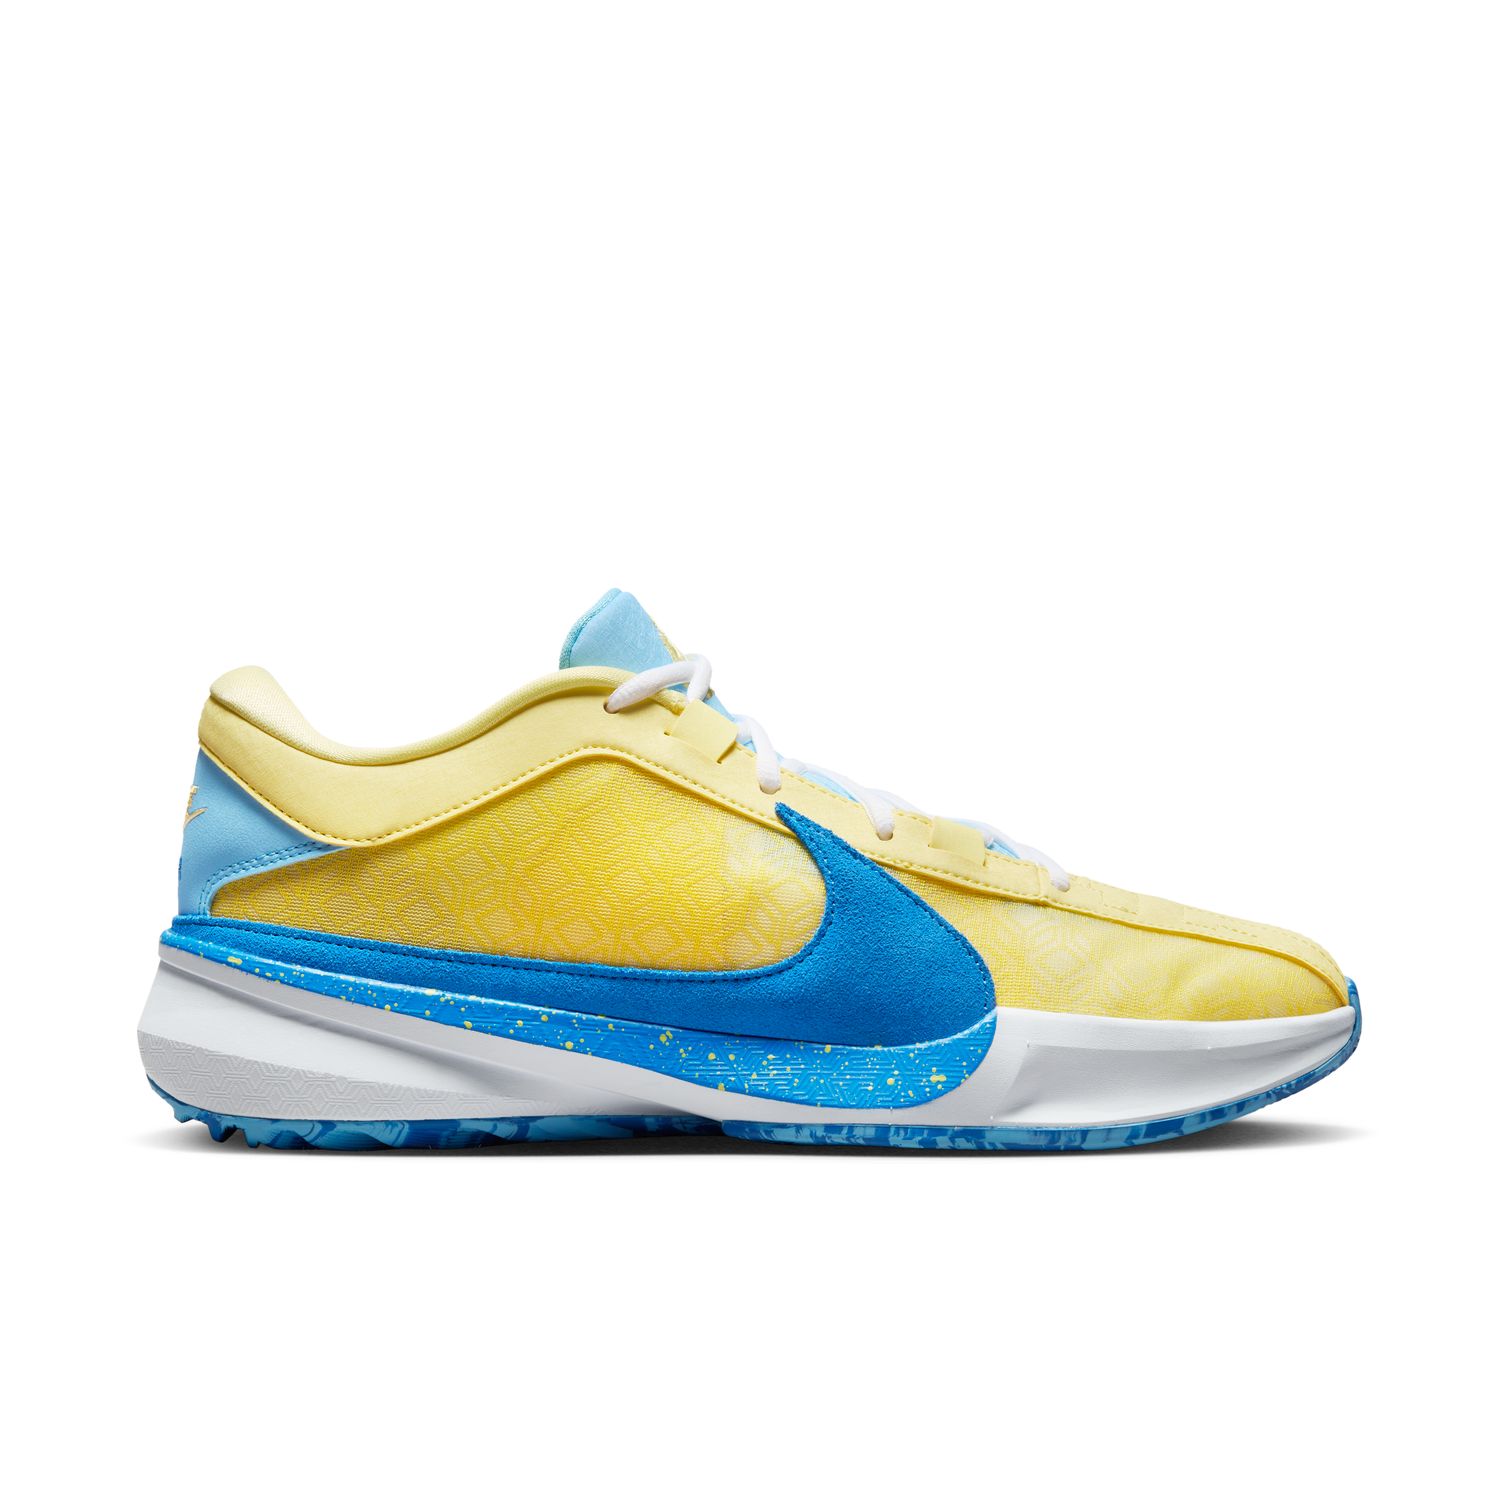 Nike Giannis Freak 5 "Soft Yellow" - Pánske - Tenisky Nike - Žlté - DX4985-700 - Veľkosť: 45.5